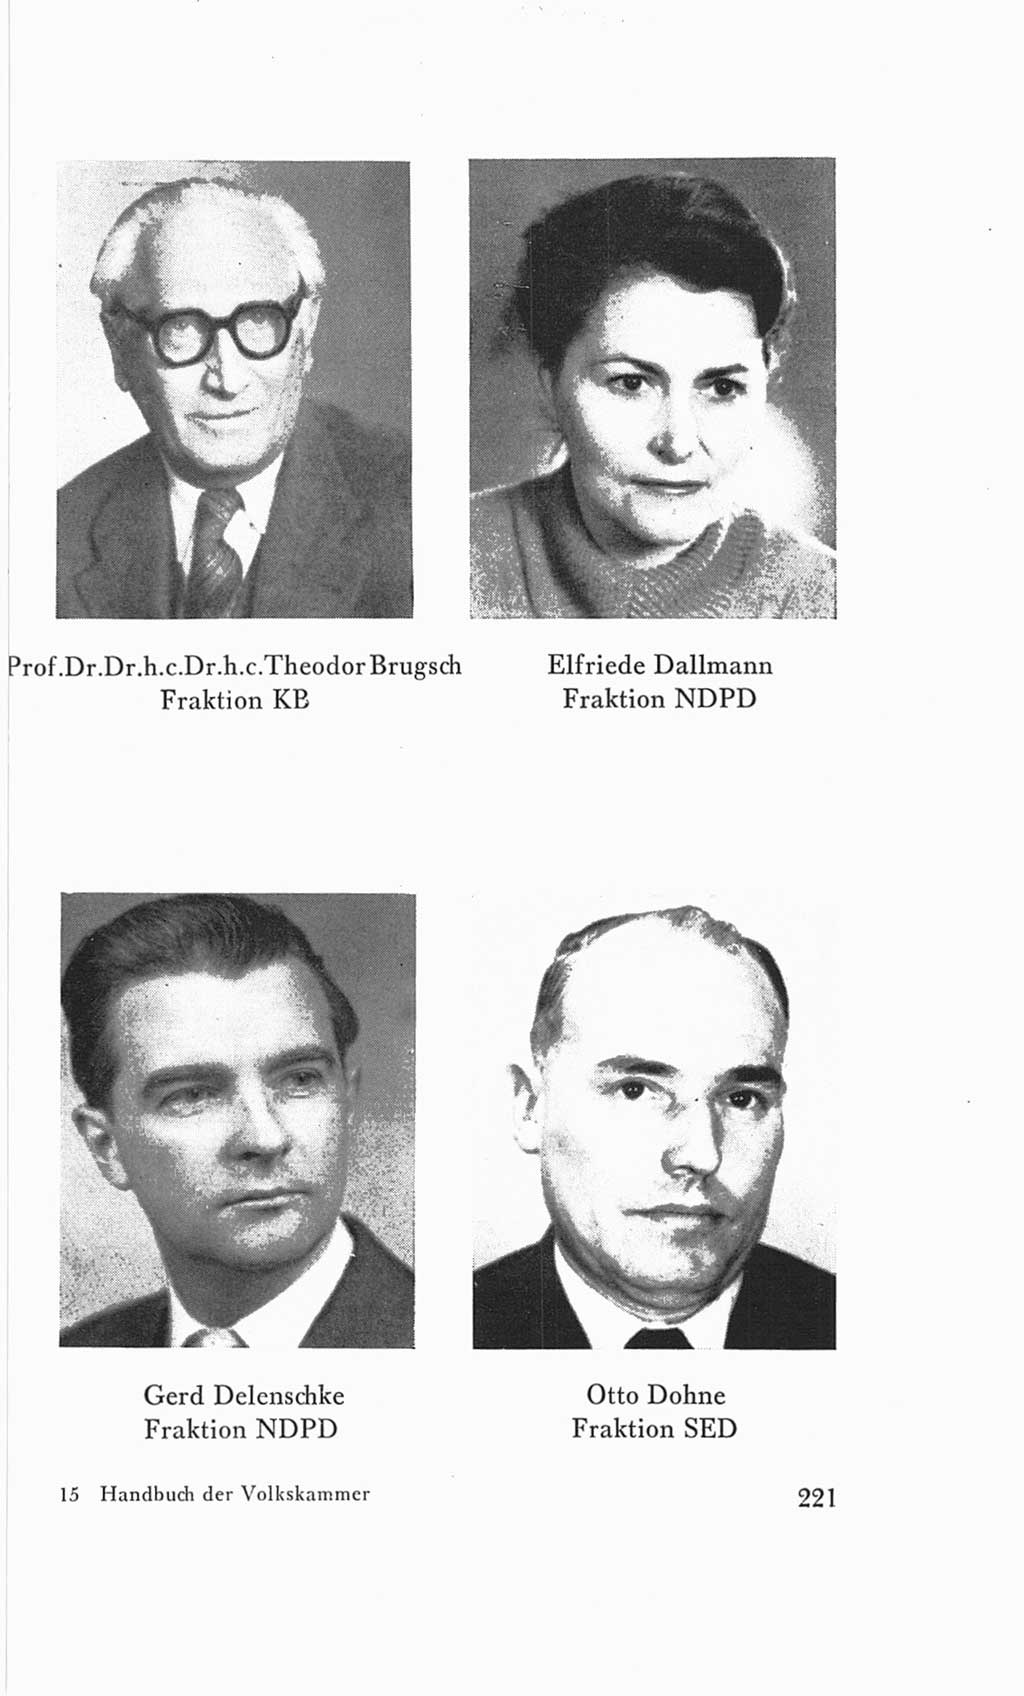 Handbuch der Volkskammer (VK) der Deutschen Demokratischen Republik (DDR), 3. Wahlperiode 1958-1963, Seite 221 (Hdb. VK. DDR 3. WP. 1958-1963, S. 221)